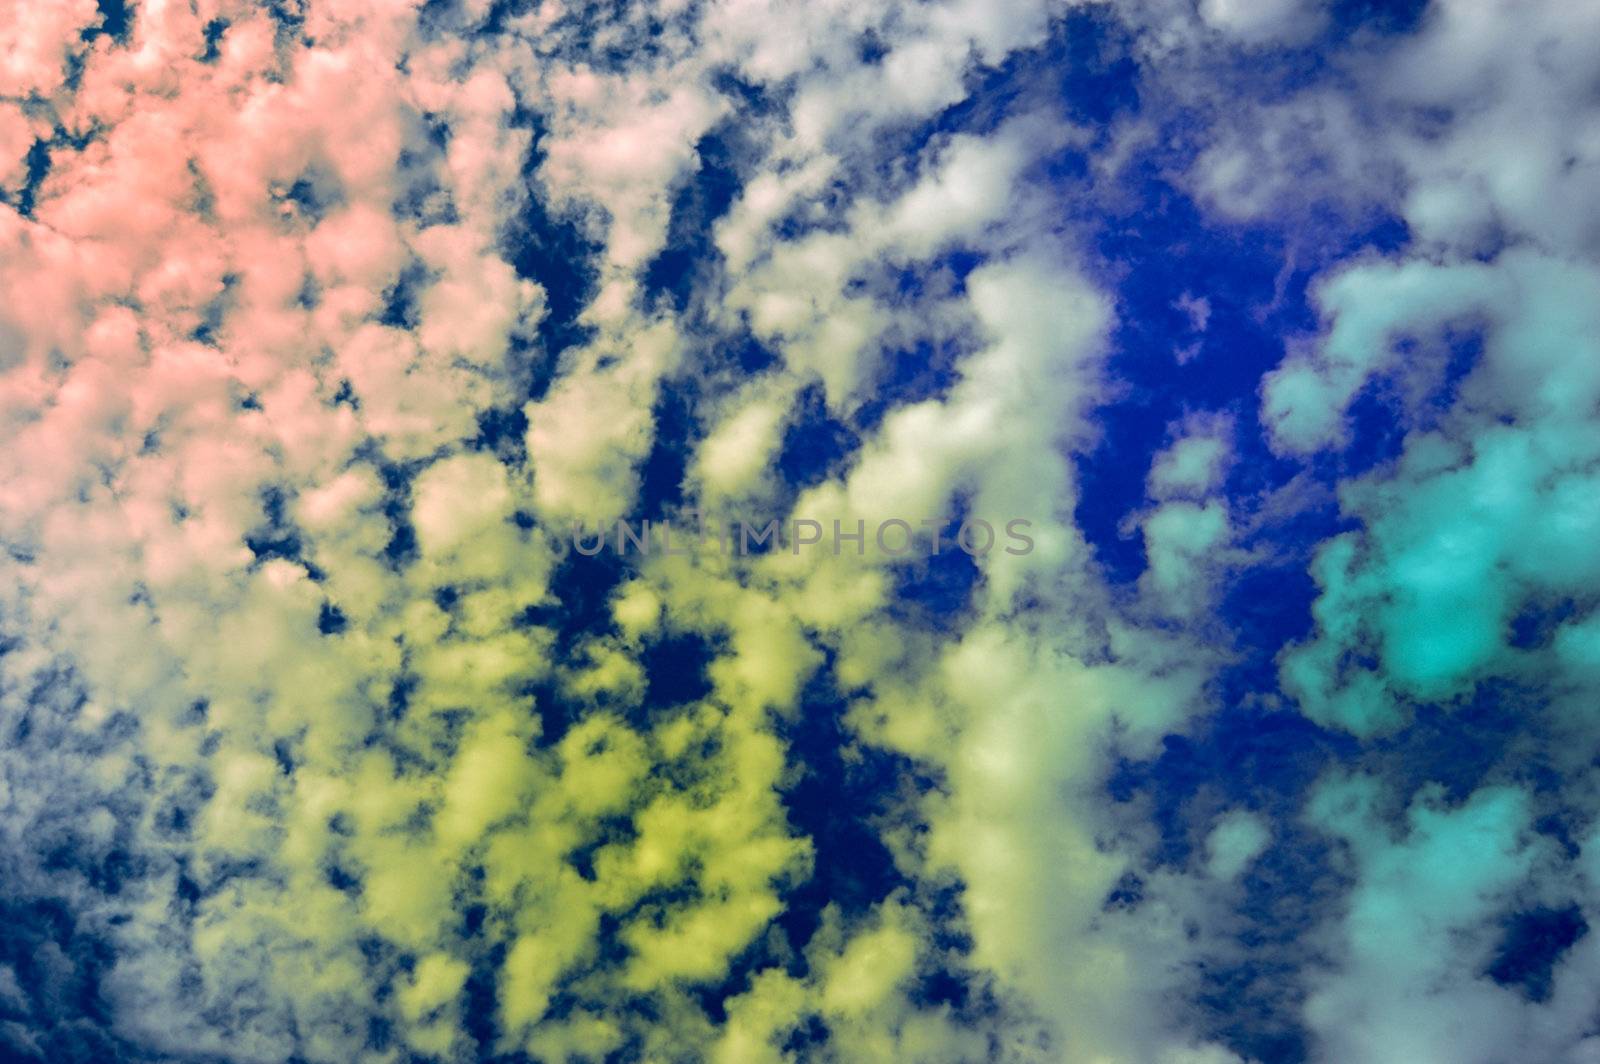 cloudscape by mettus